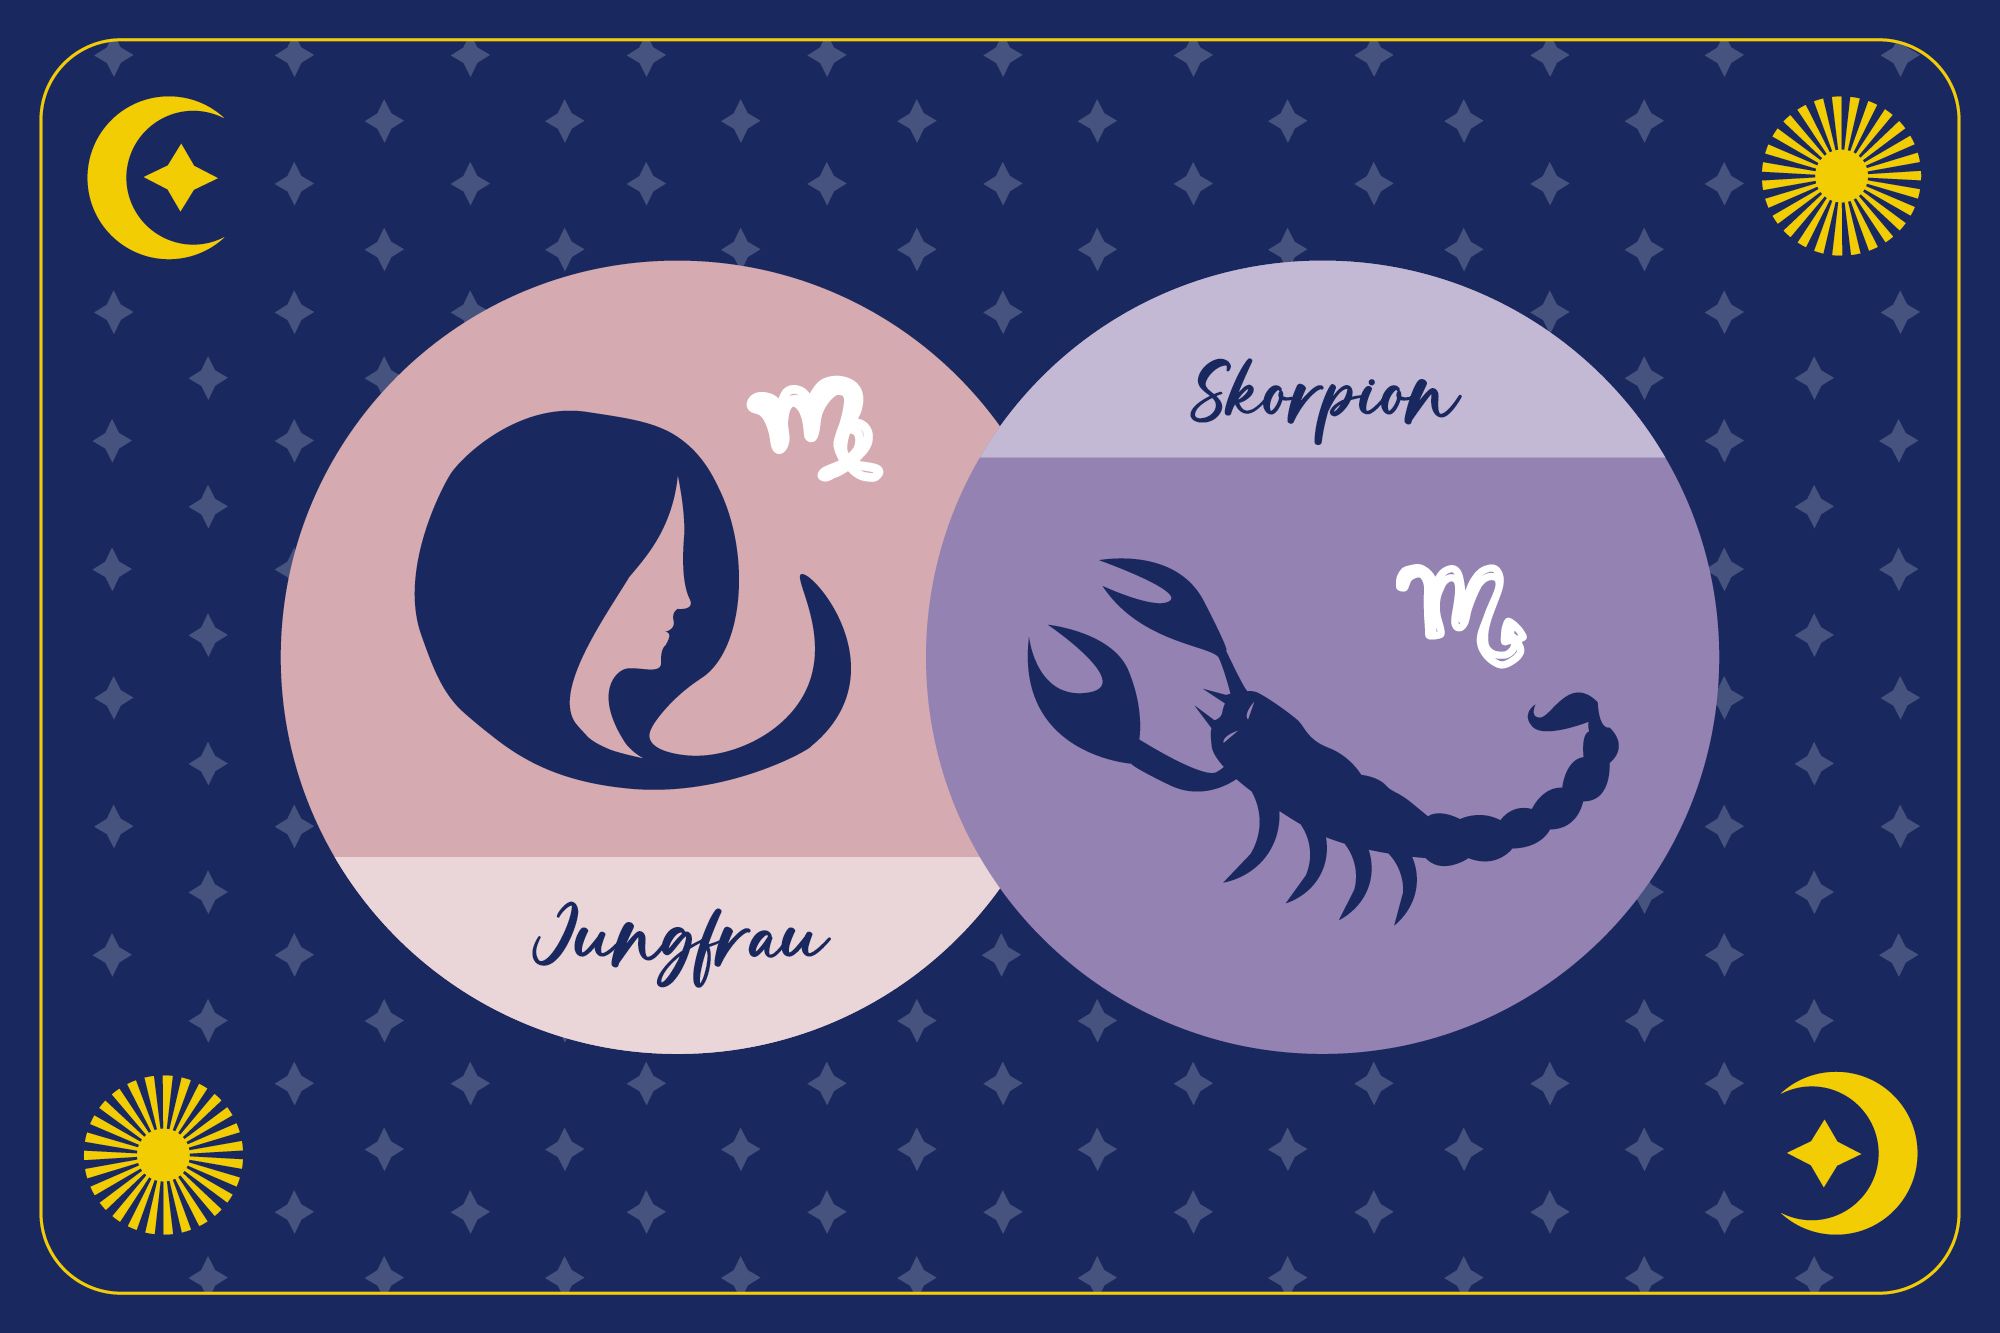 Sternzeichen Skorpion in lilanem Kreis und Sternzeichen Jungfrau in beigem Kreis auf dunkelblauem Hintergrund mit Mond, Sonne und Sternen